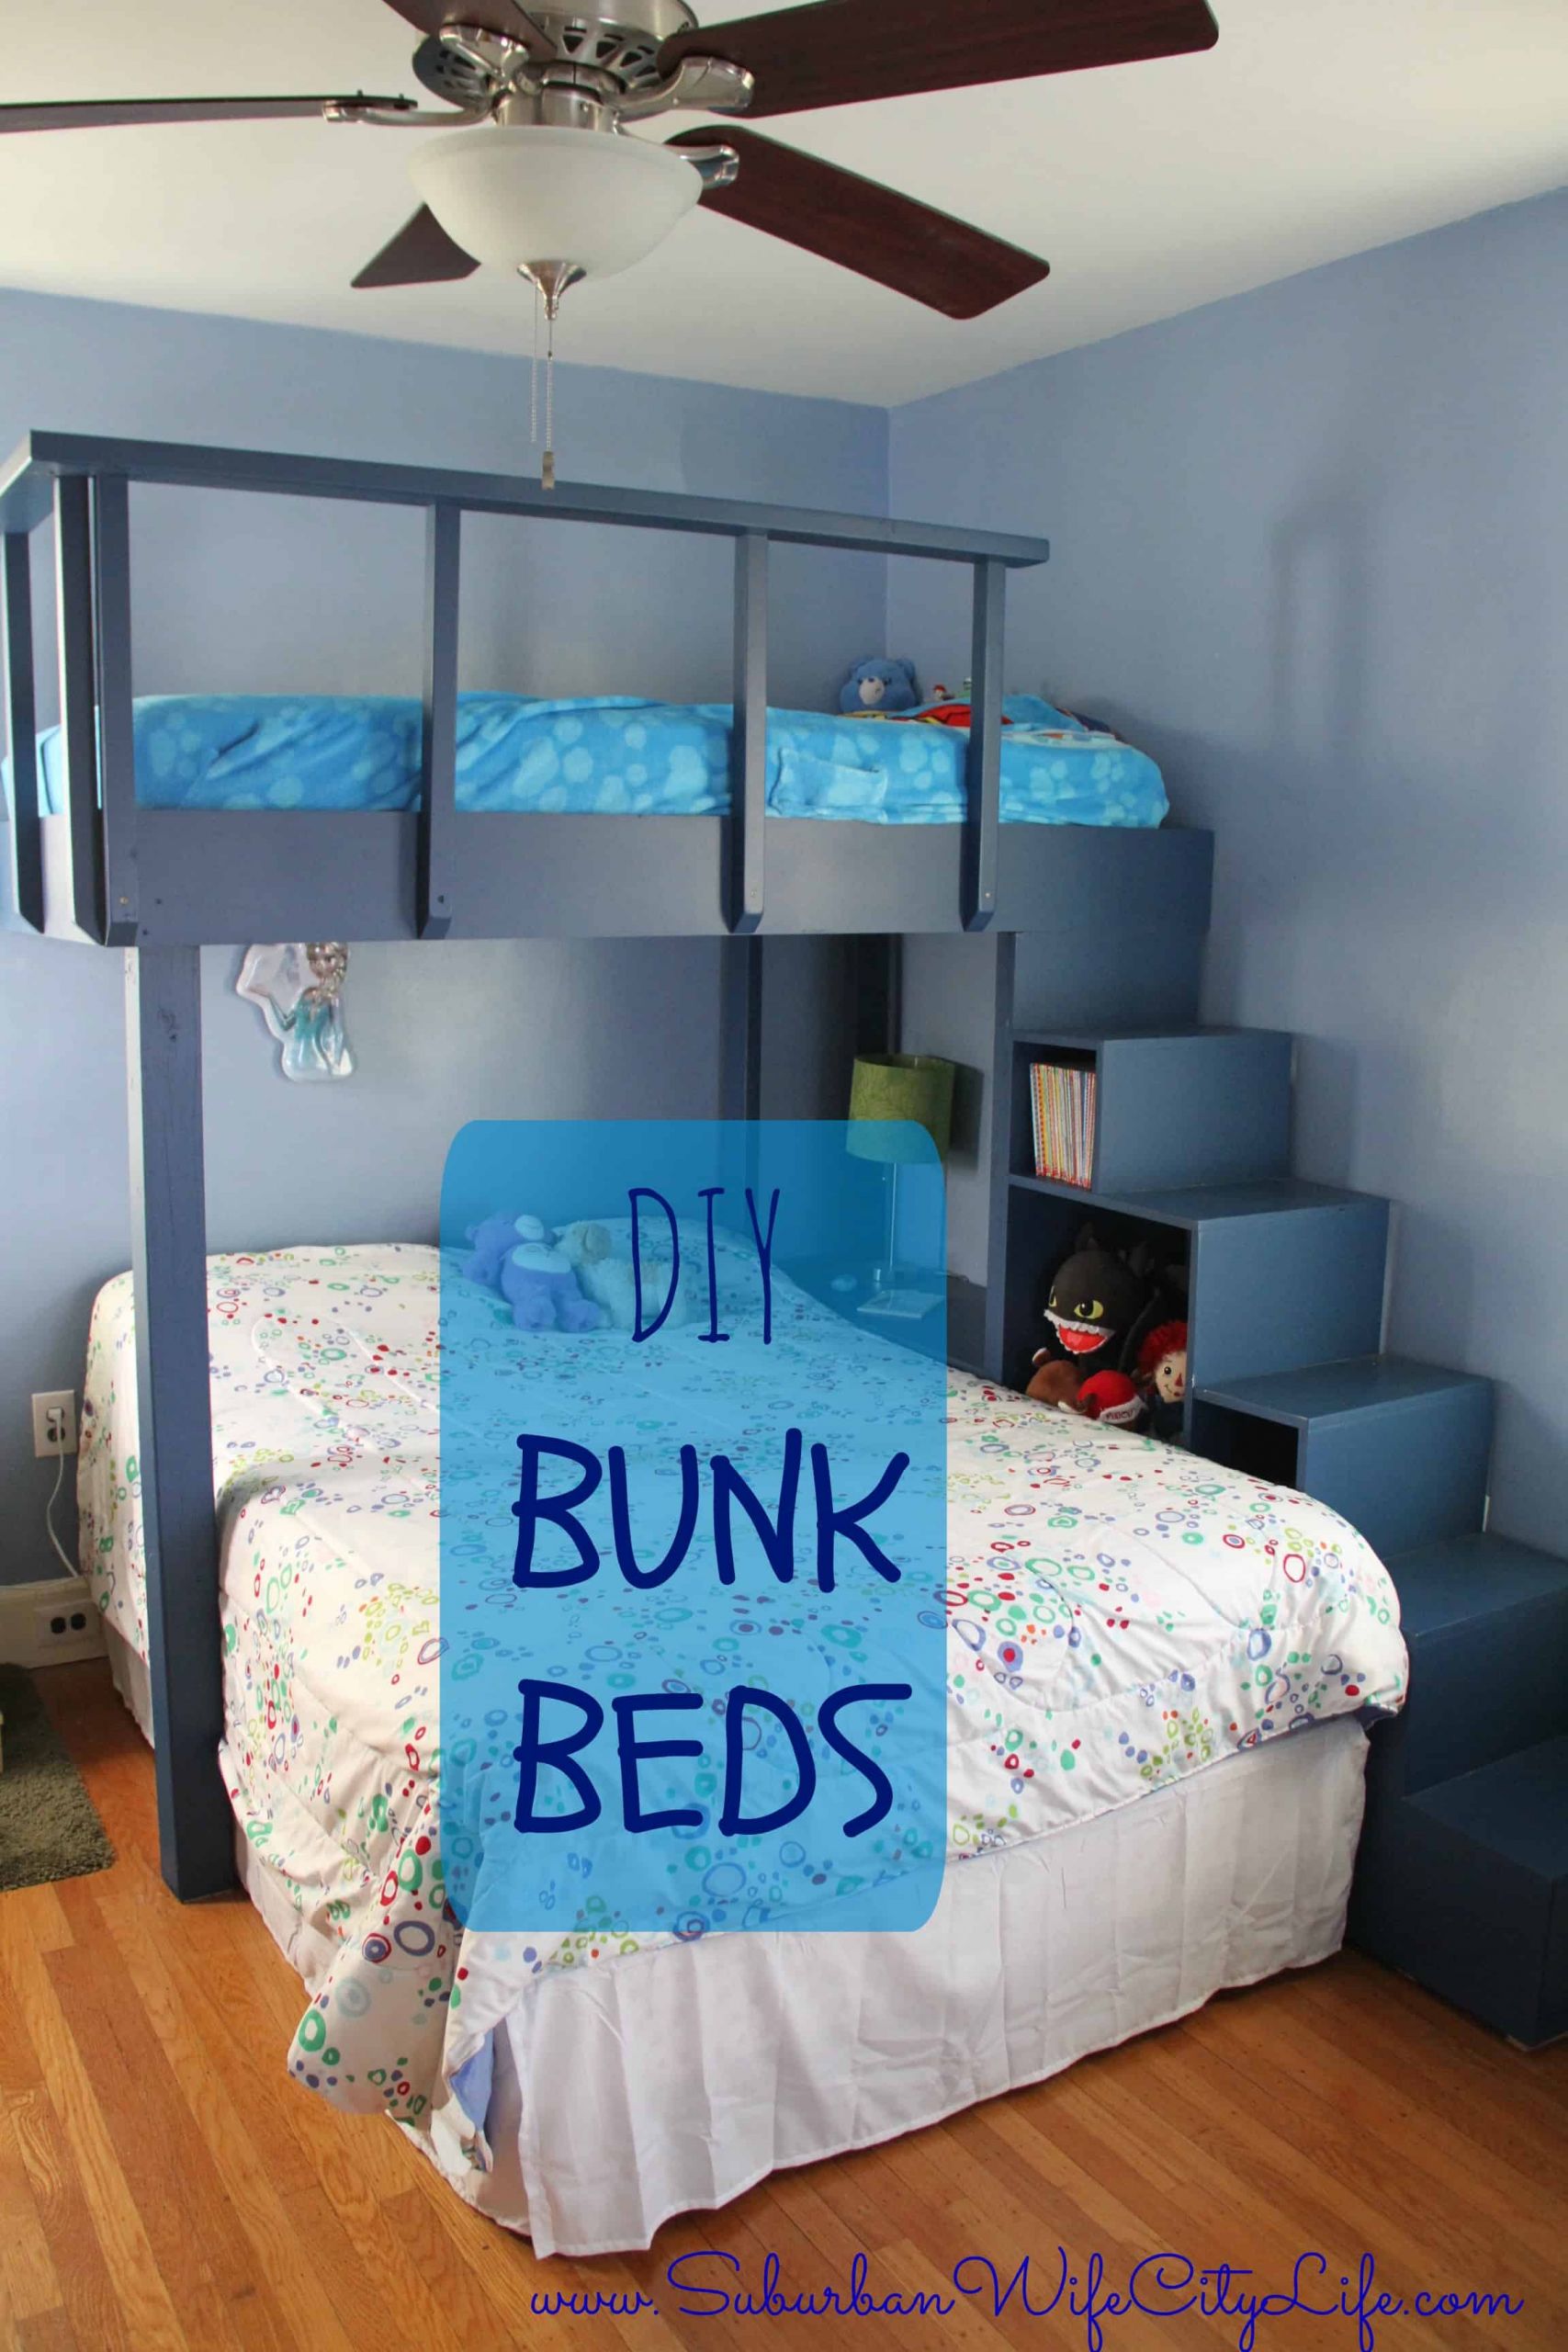 DIY Kids Bunk Bed
 DIY Bunk Beds Suburban Wife City Life